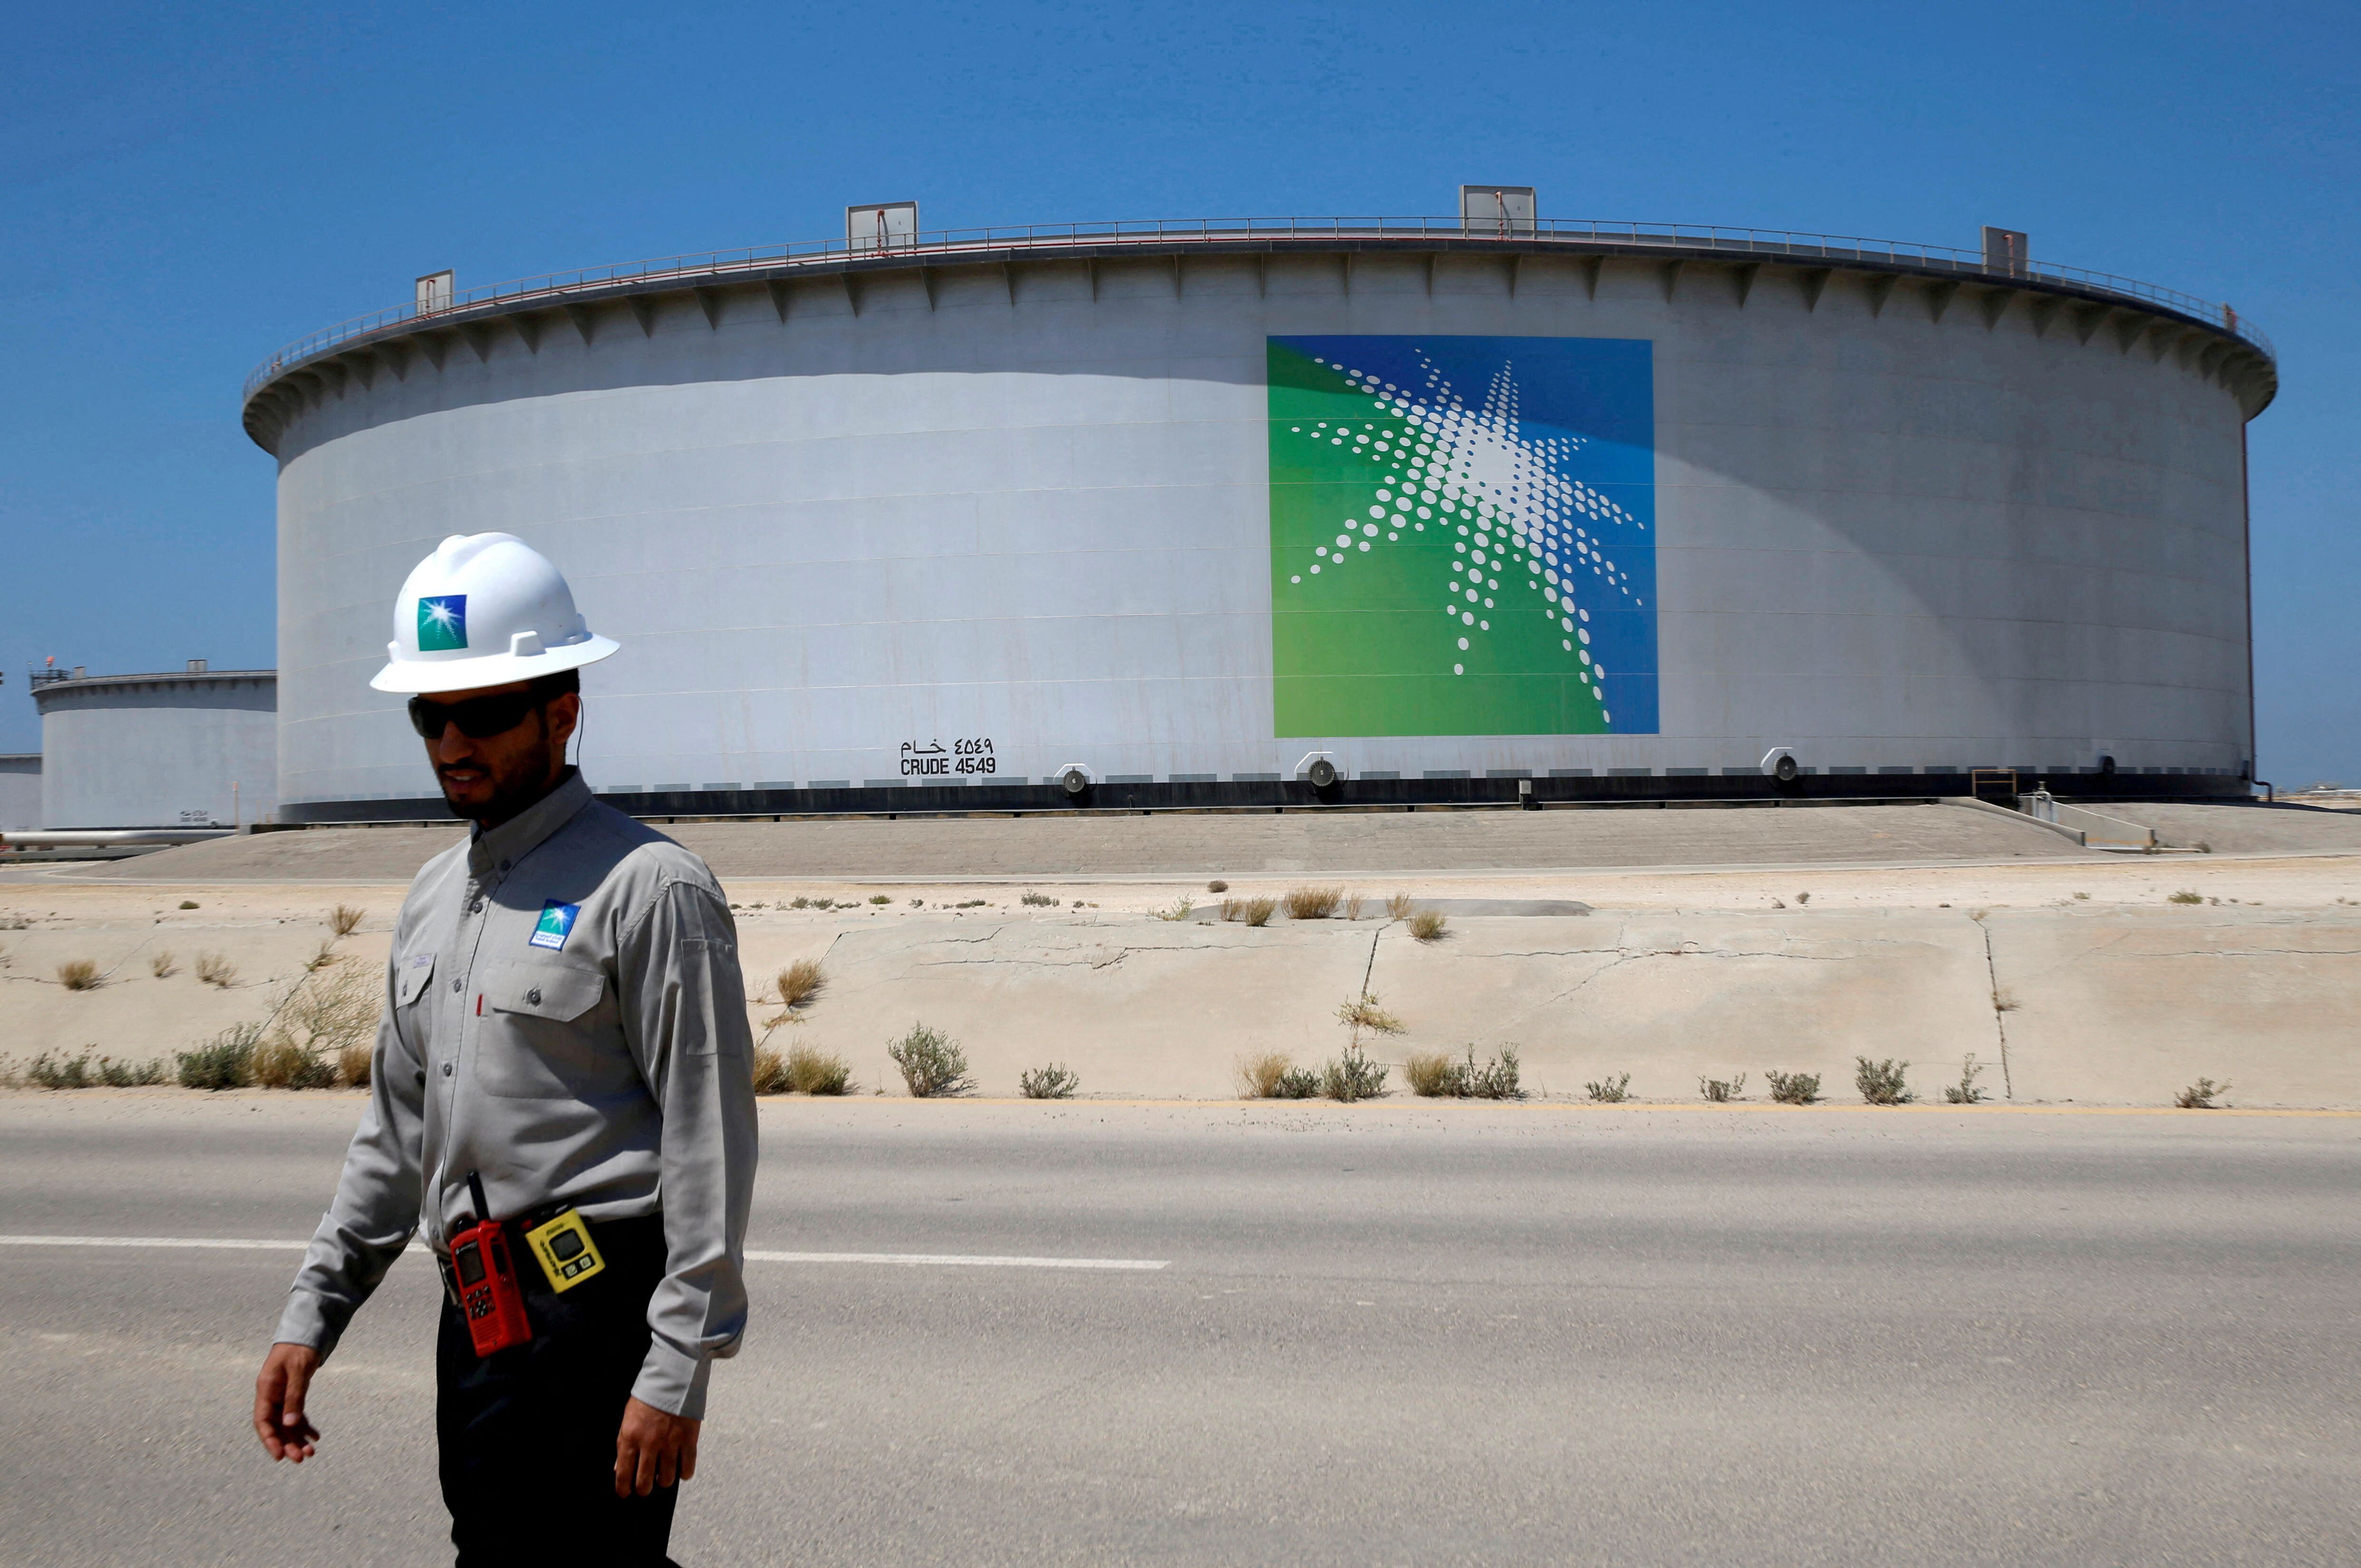 Un empleado de Aramco camina cerca de un tanque de petróleo en la refinería y terminal petrolera Ras Tanura de Saudi Aramco en Arabia Saudita el 21 de mayo de 2018. REUTERS/Ahmed Jadallah/File Photo